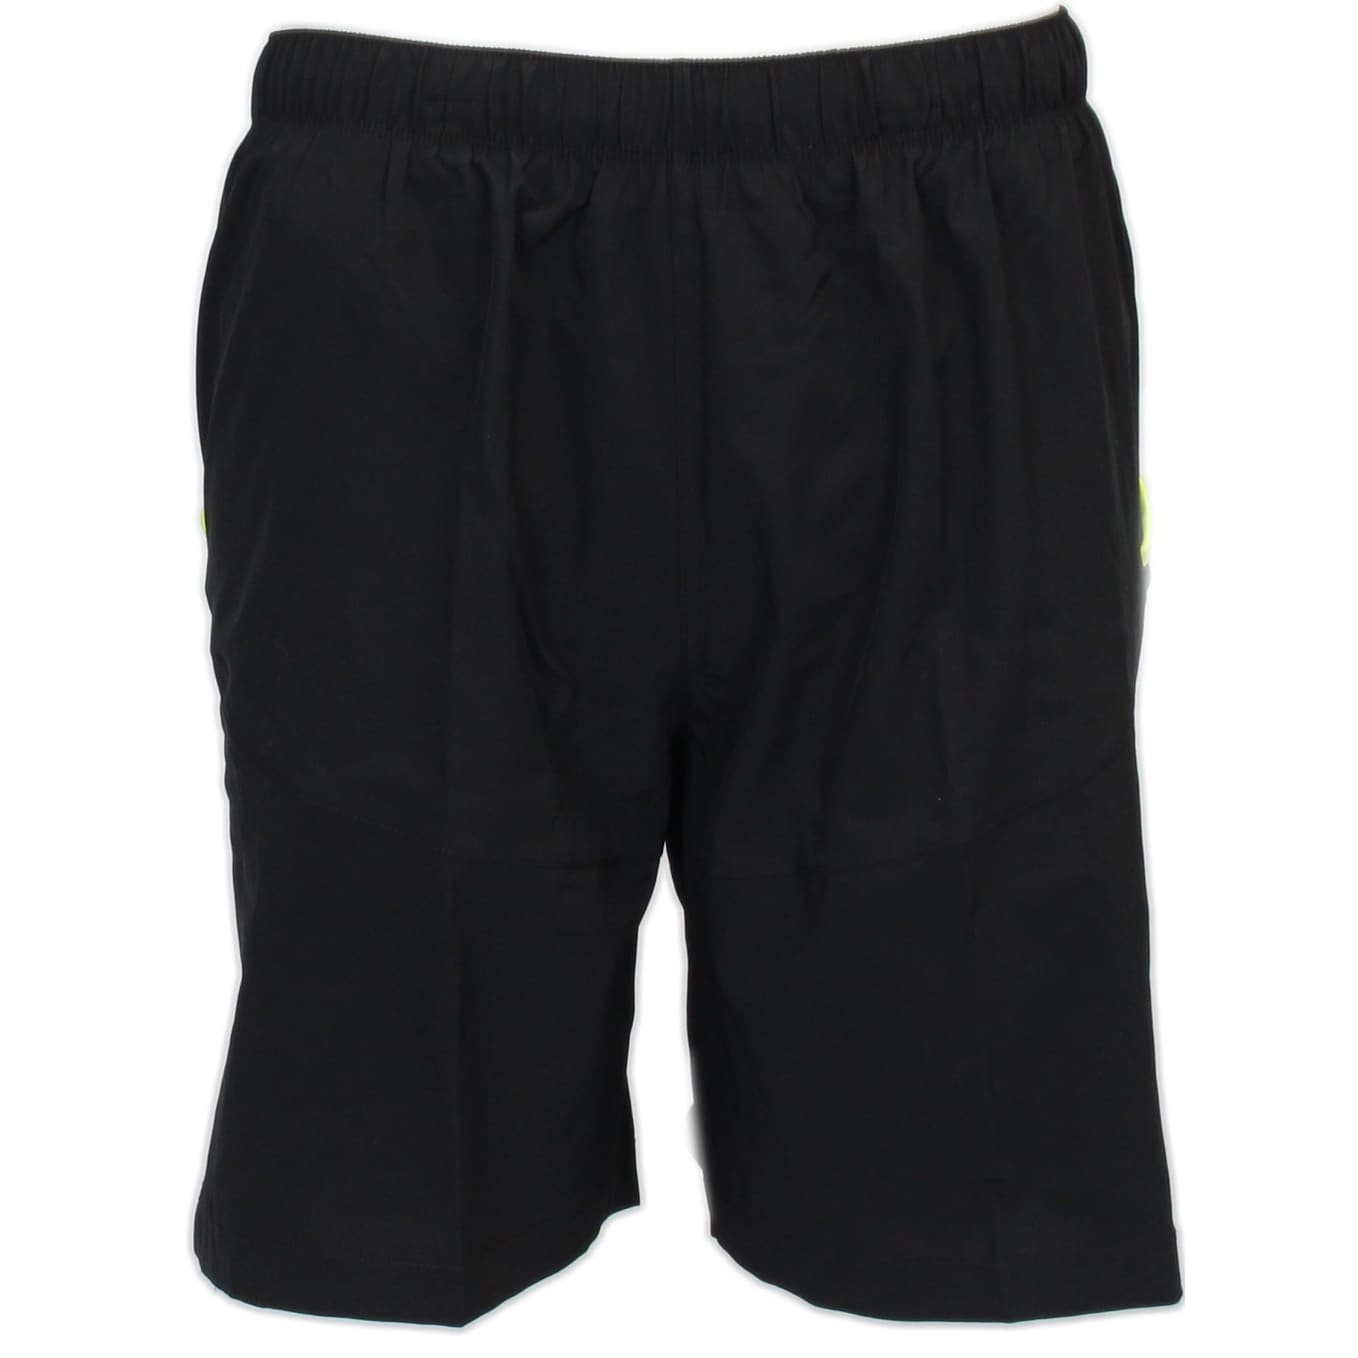 asics athletic shorts